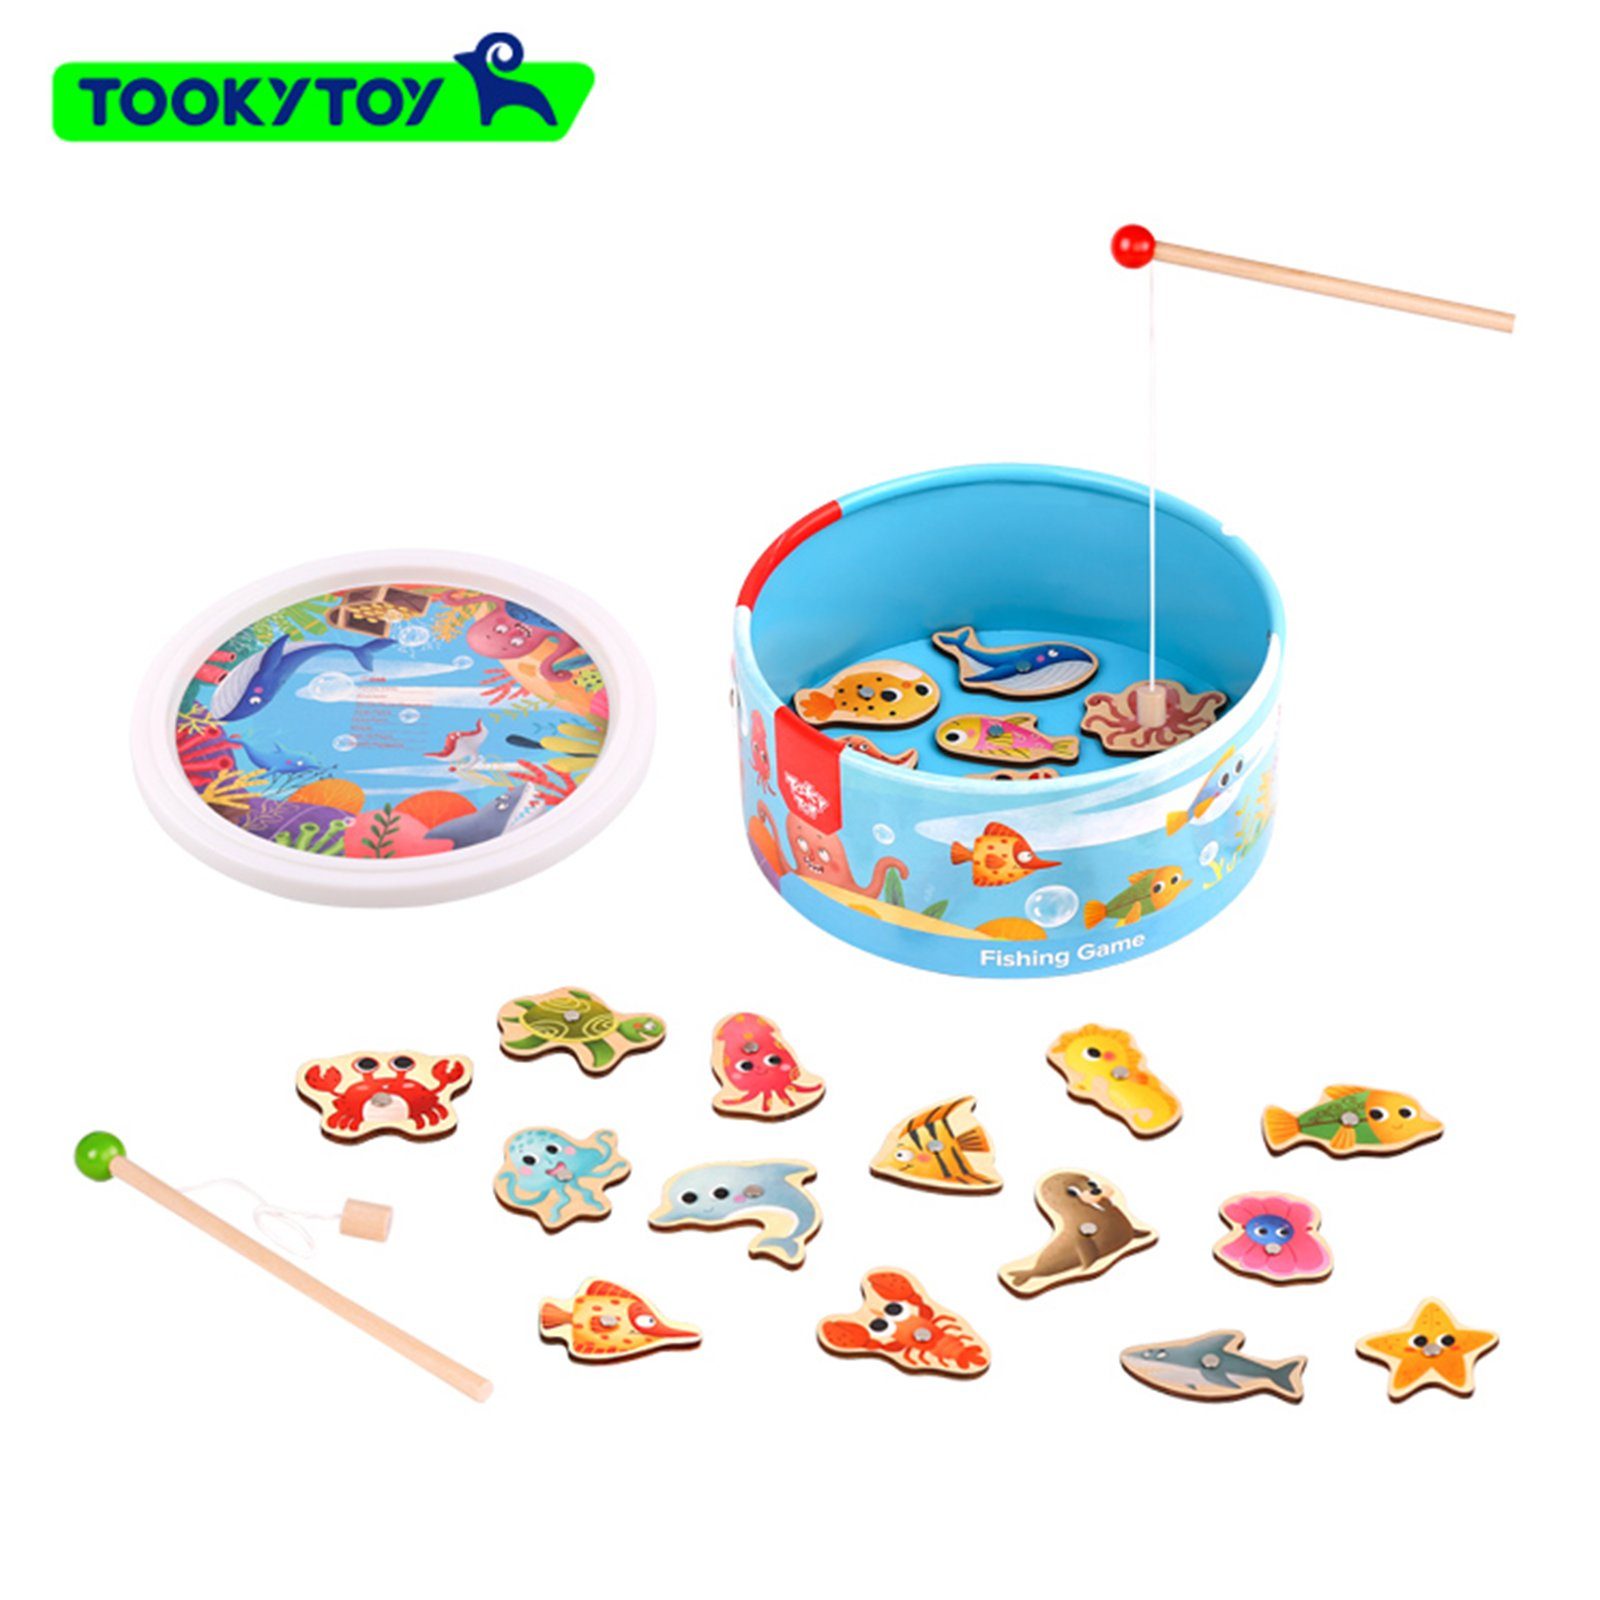 Tooky Toy Lernspielzeug Angelspiel mit magnet und Aufbewahrungsbox